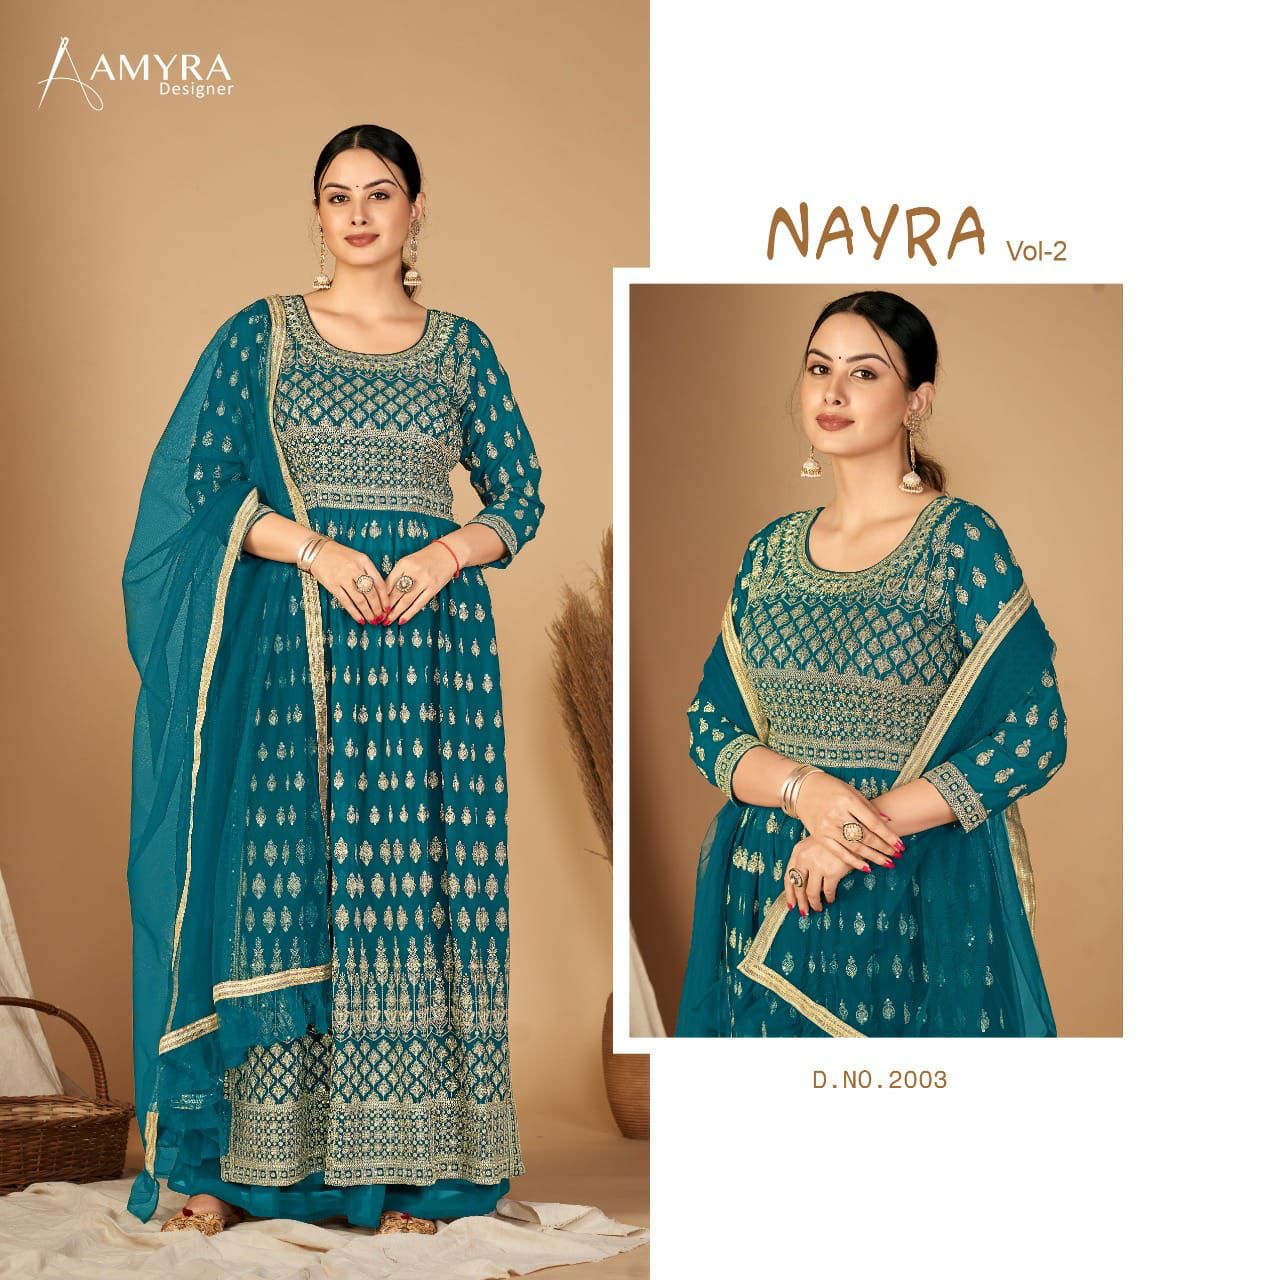 Amyra Nayra Vol 2 collection 7